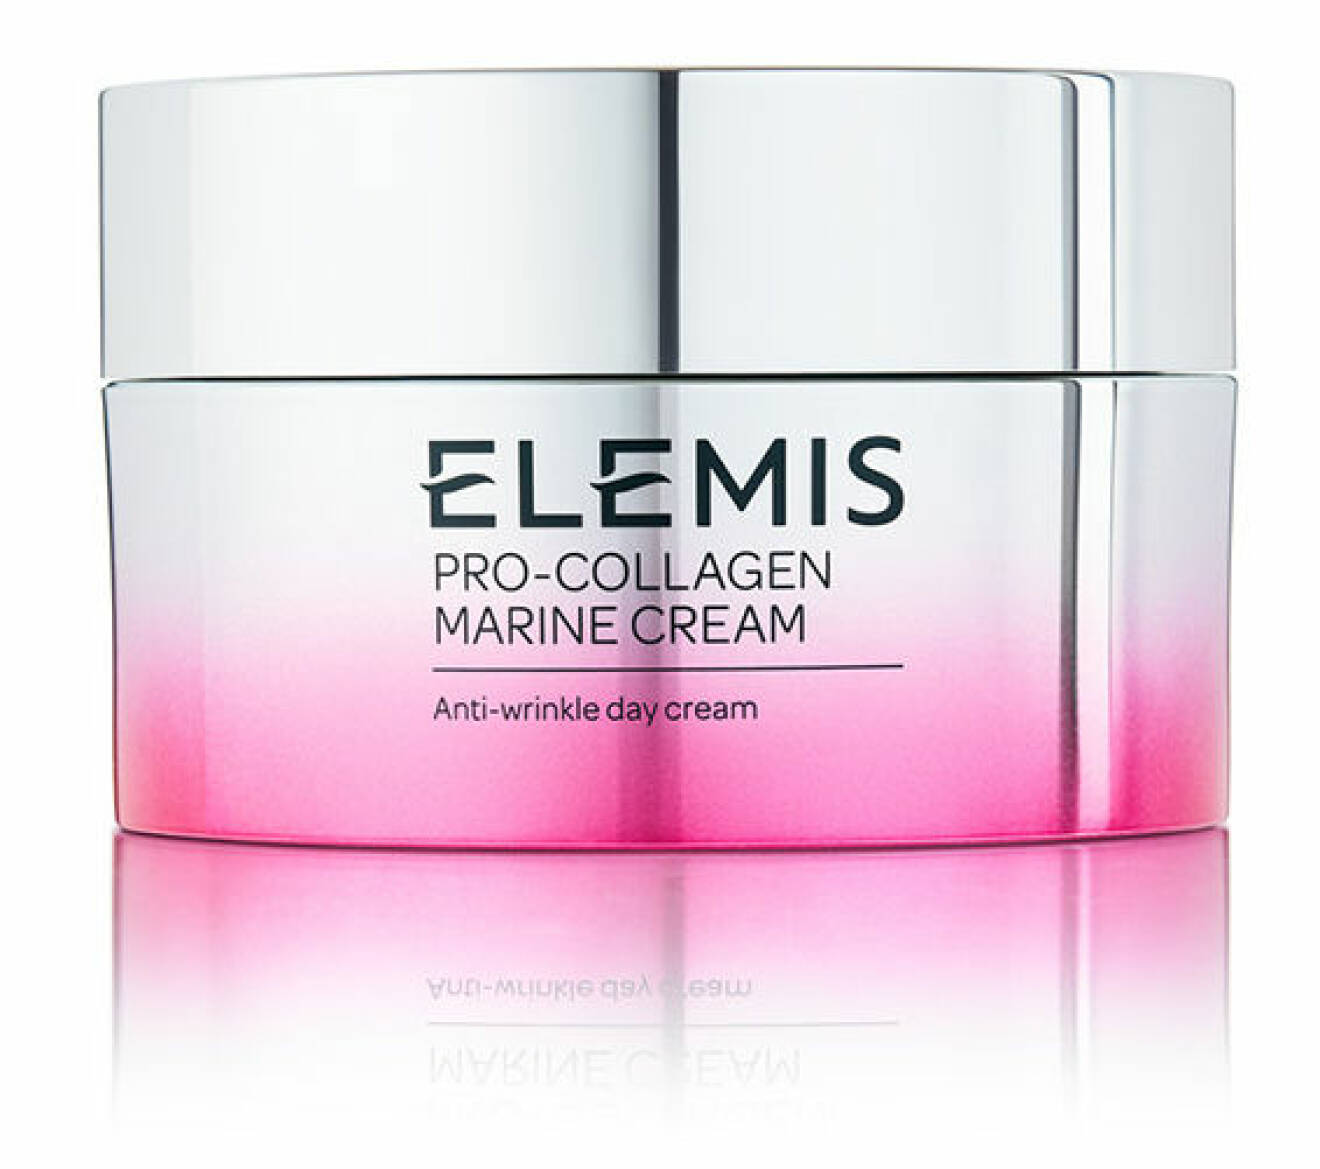 Ansiktskräm Pro Collagen Marine Cream från Elemis.